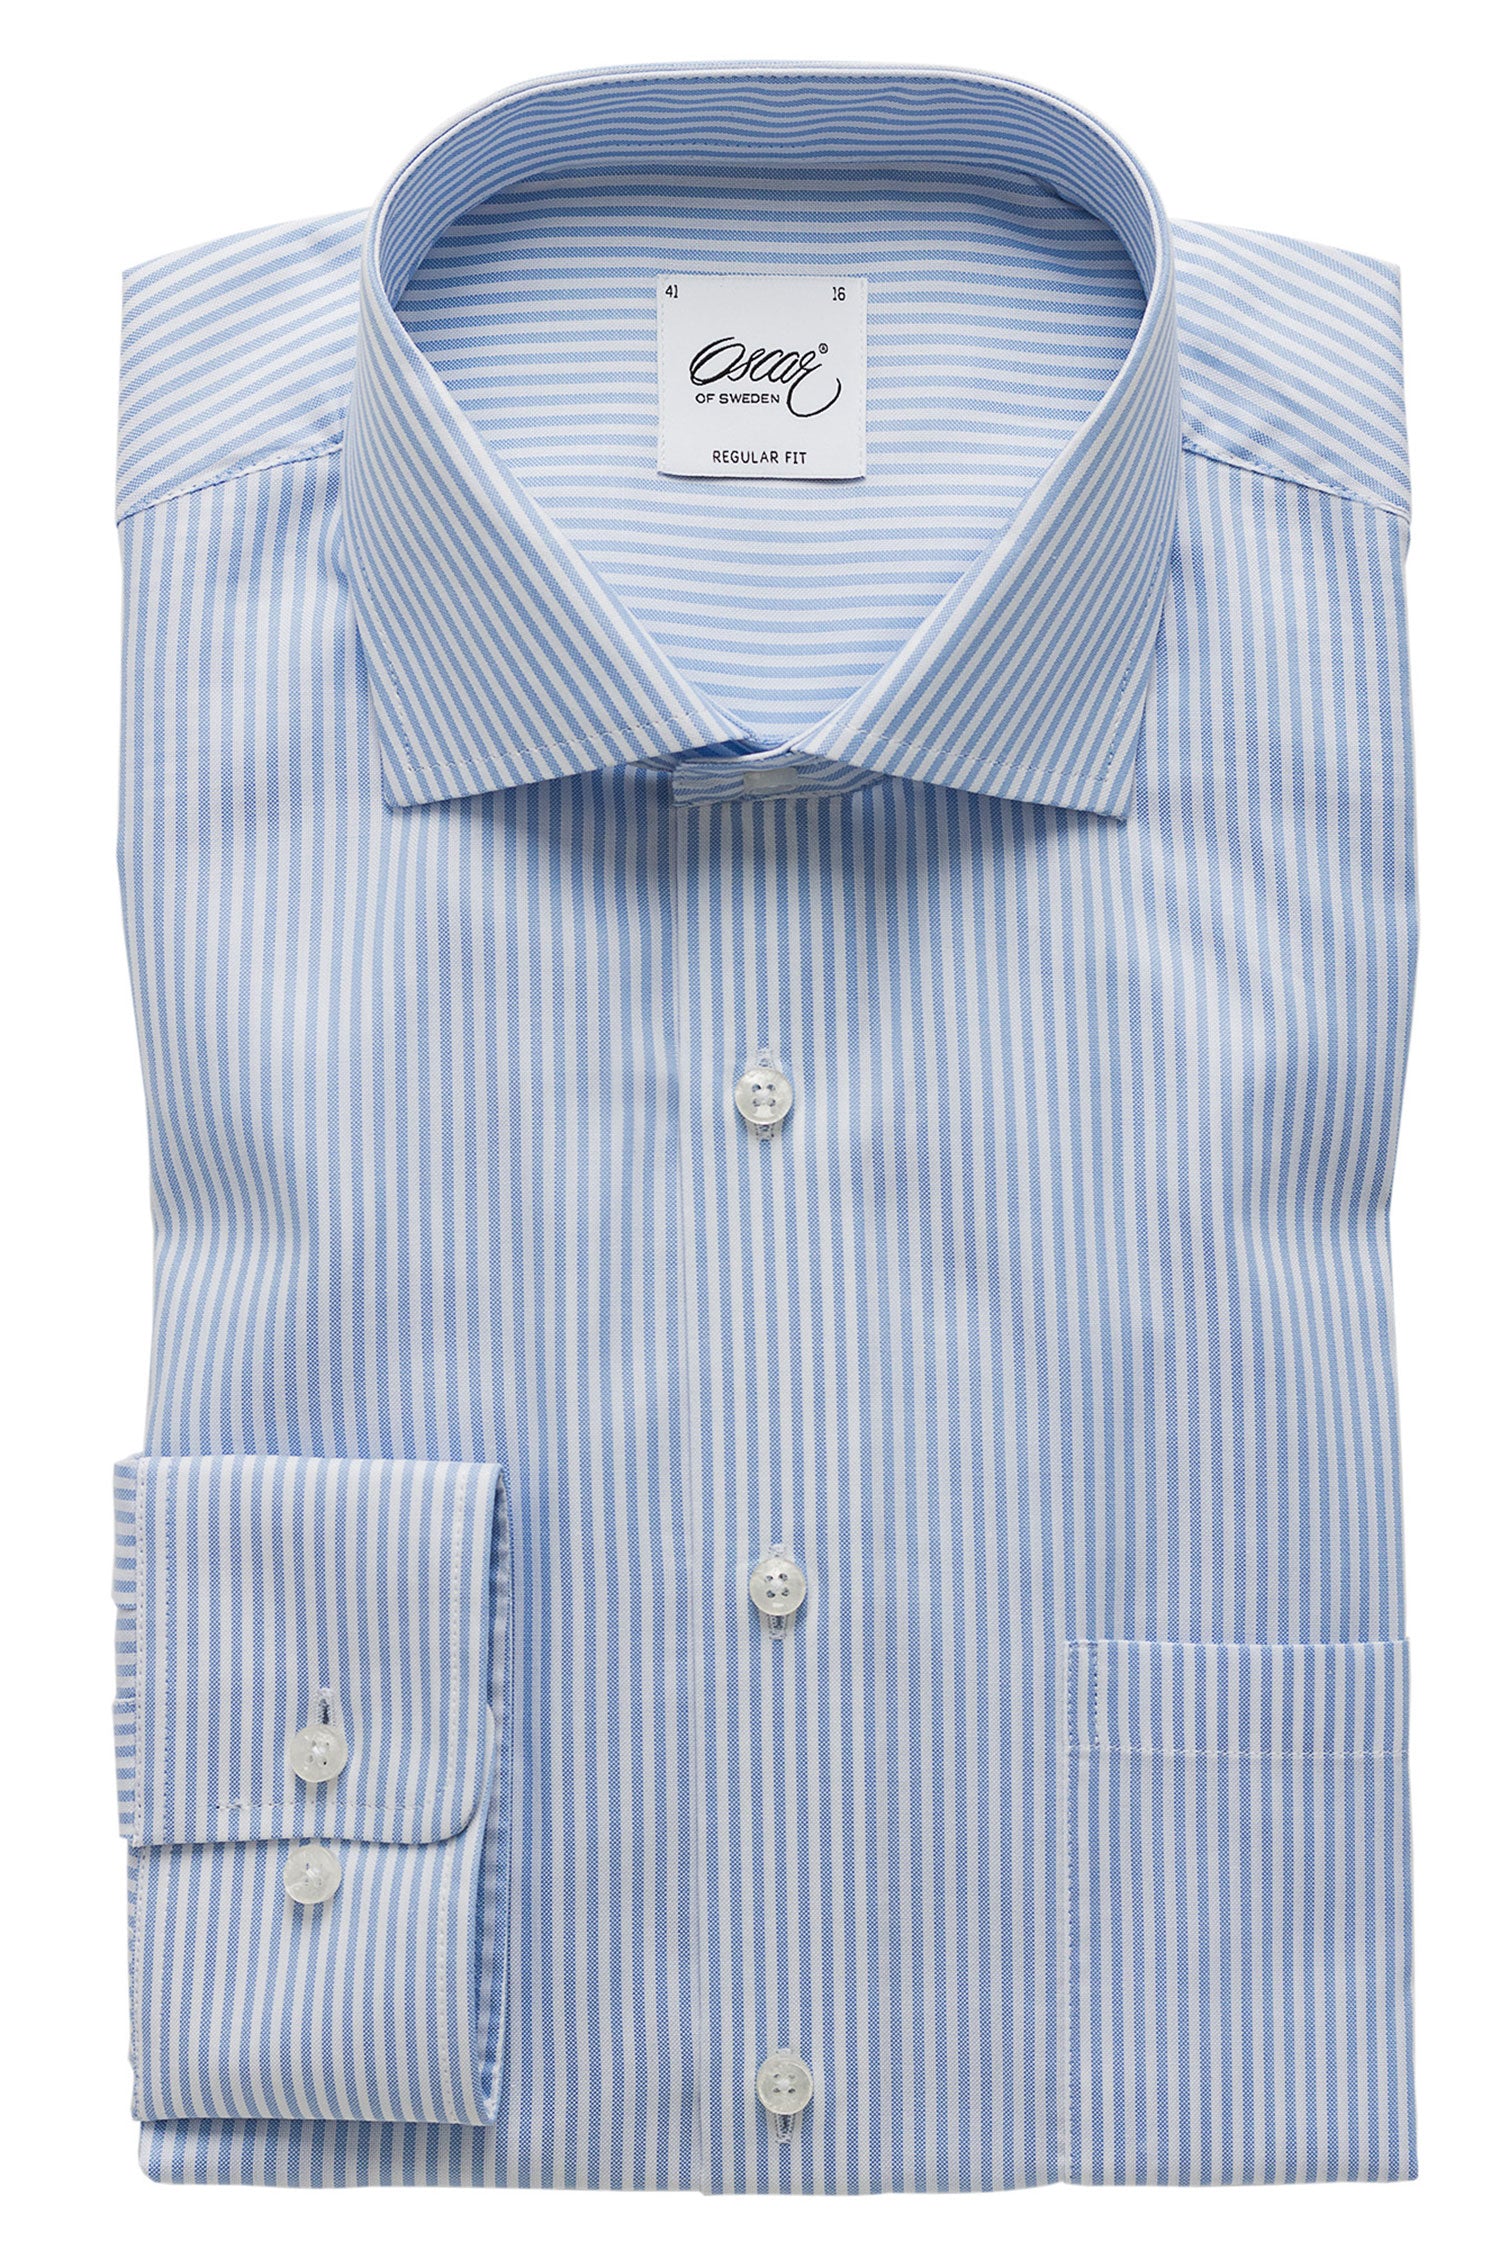 Blue striped regular fit shirt